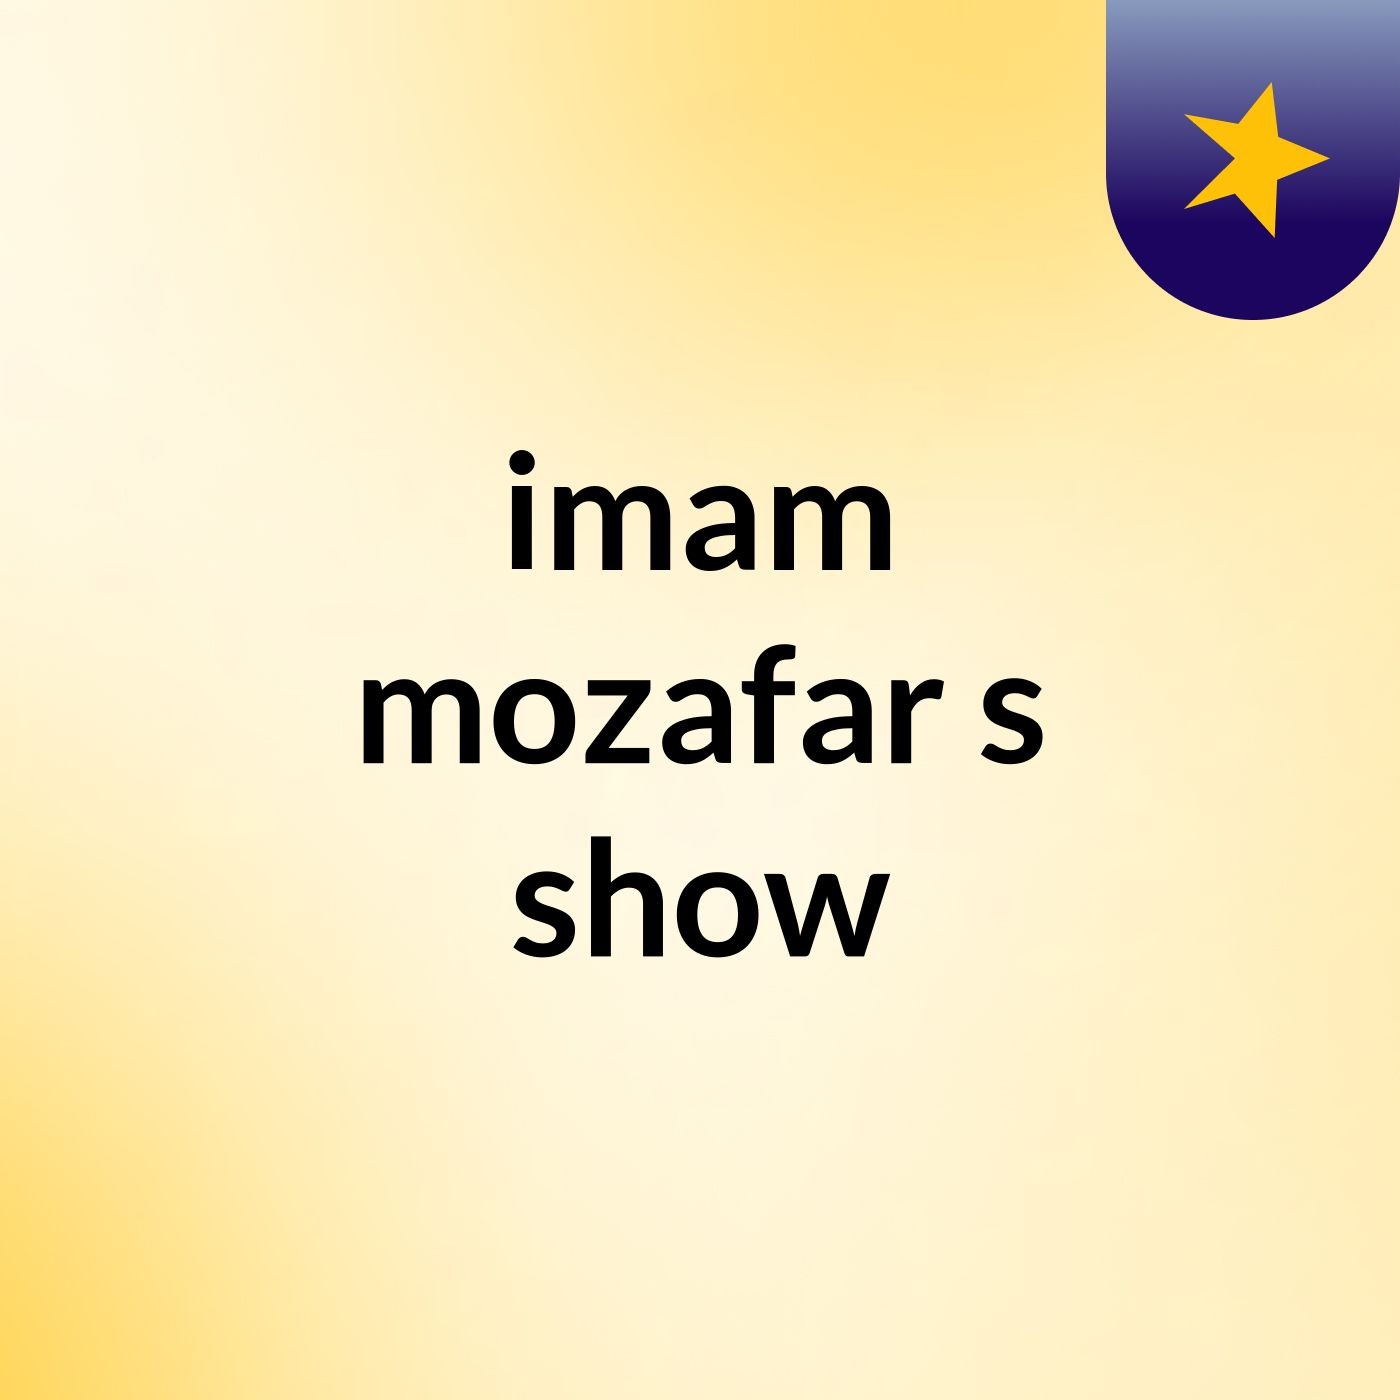 imam mozafar's show